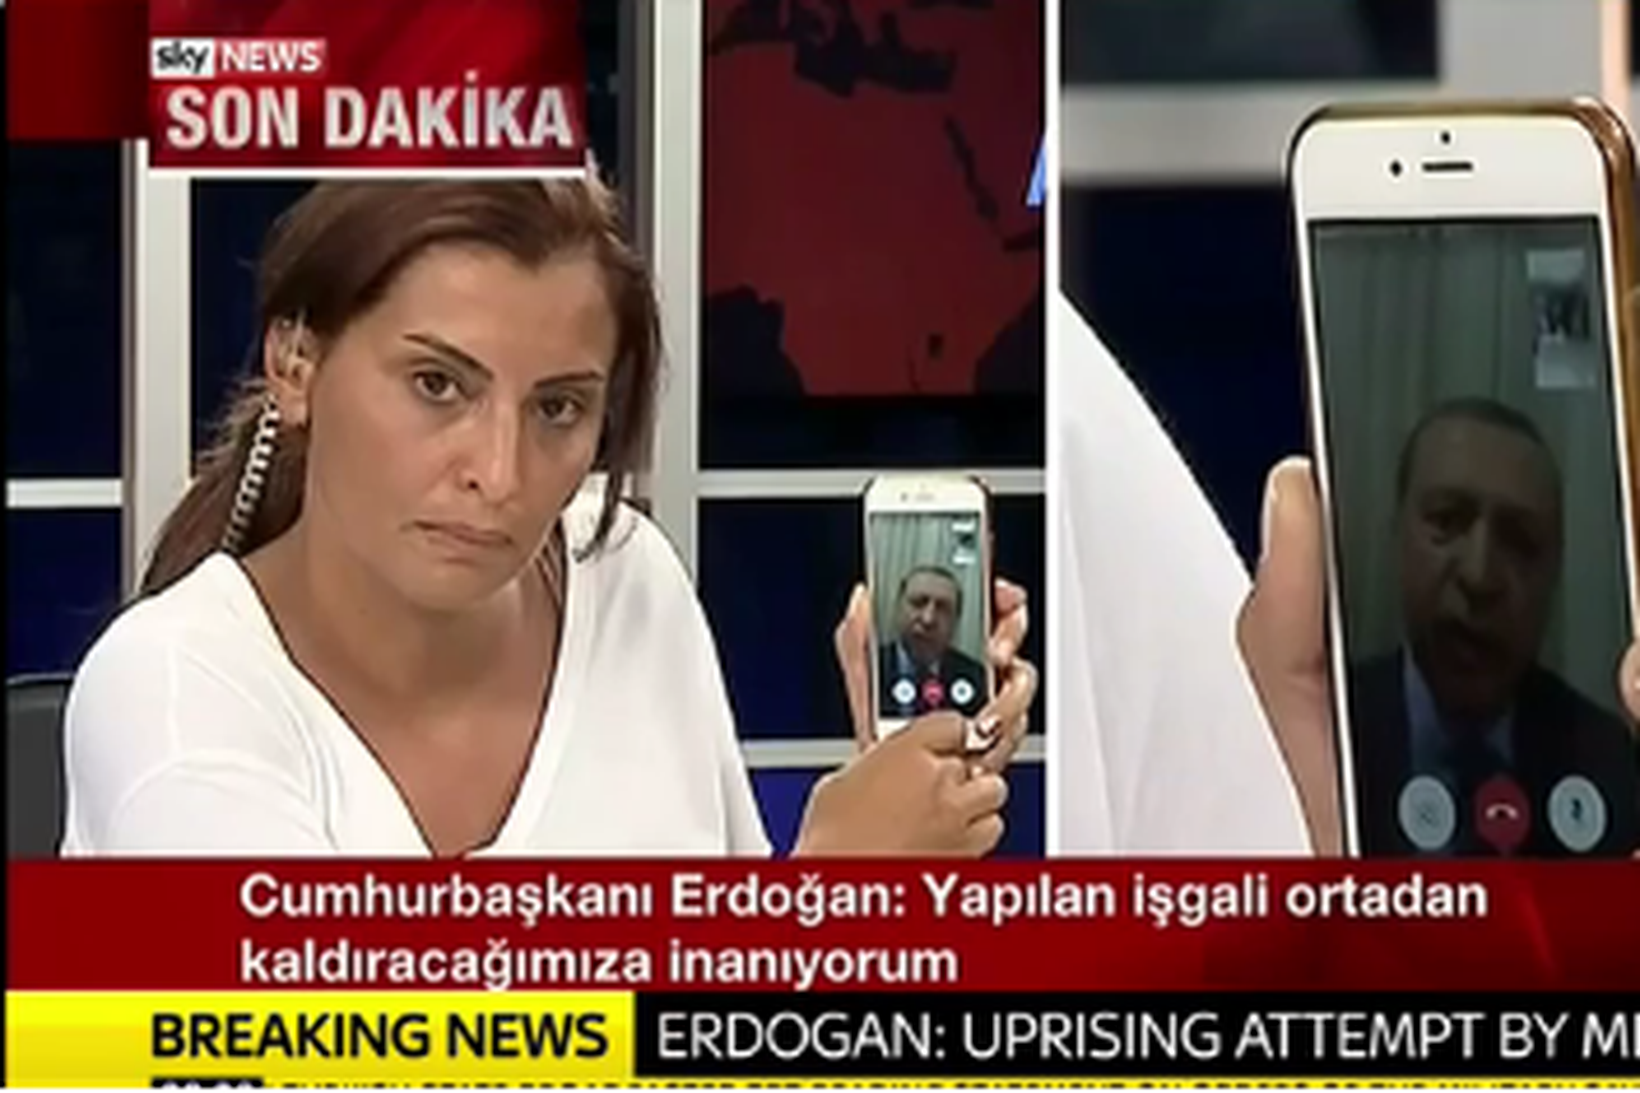 Erdogan ræddi við fréttakonuna í gegnum Skype á síma.